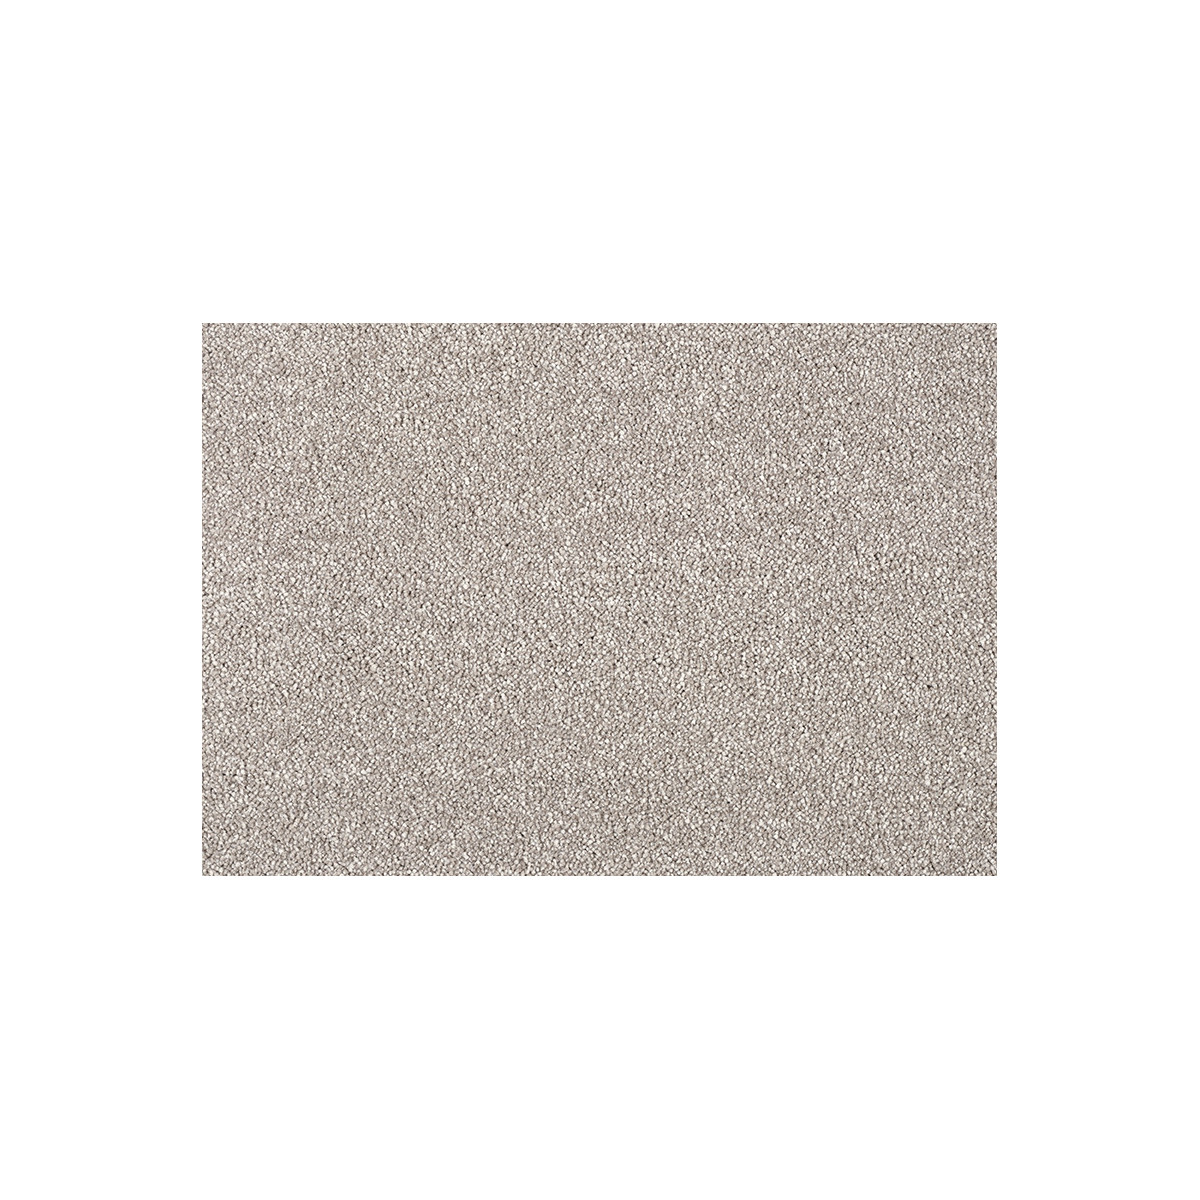 AKCE: 135x458 cm Metrážový koberec Fascination New 251 tm. béžový